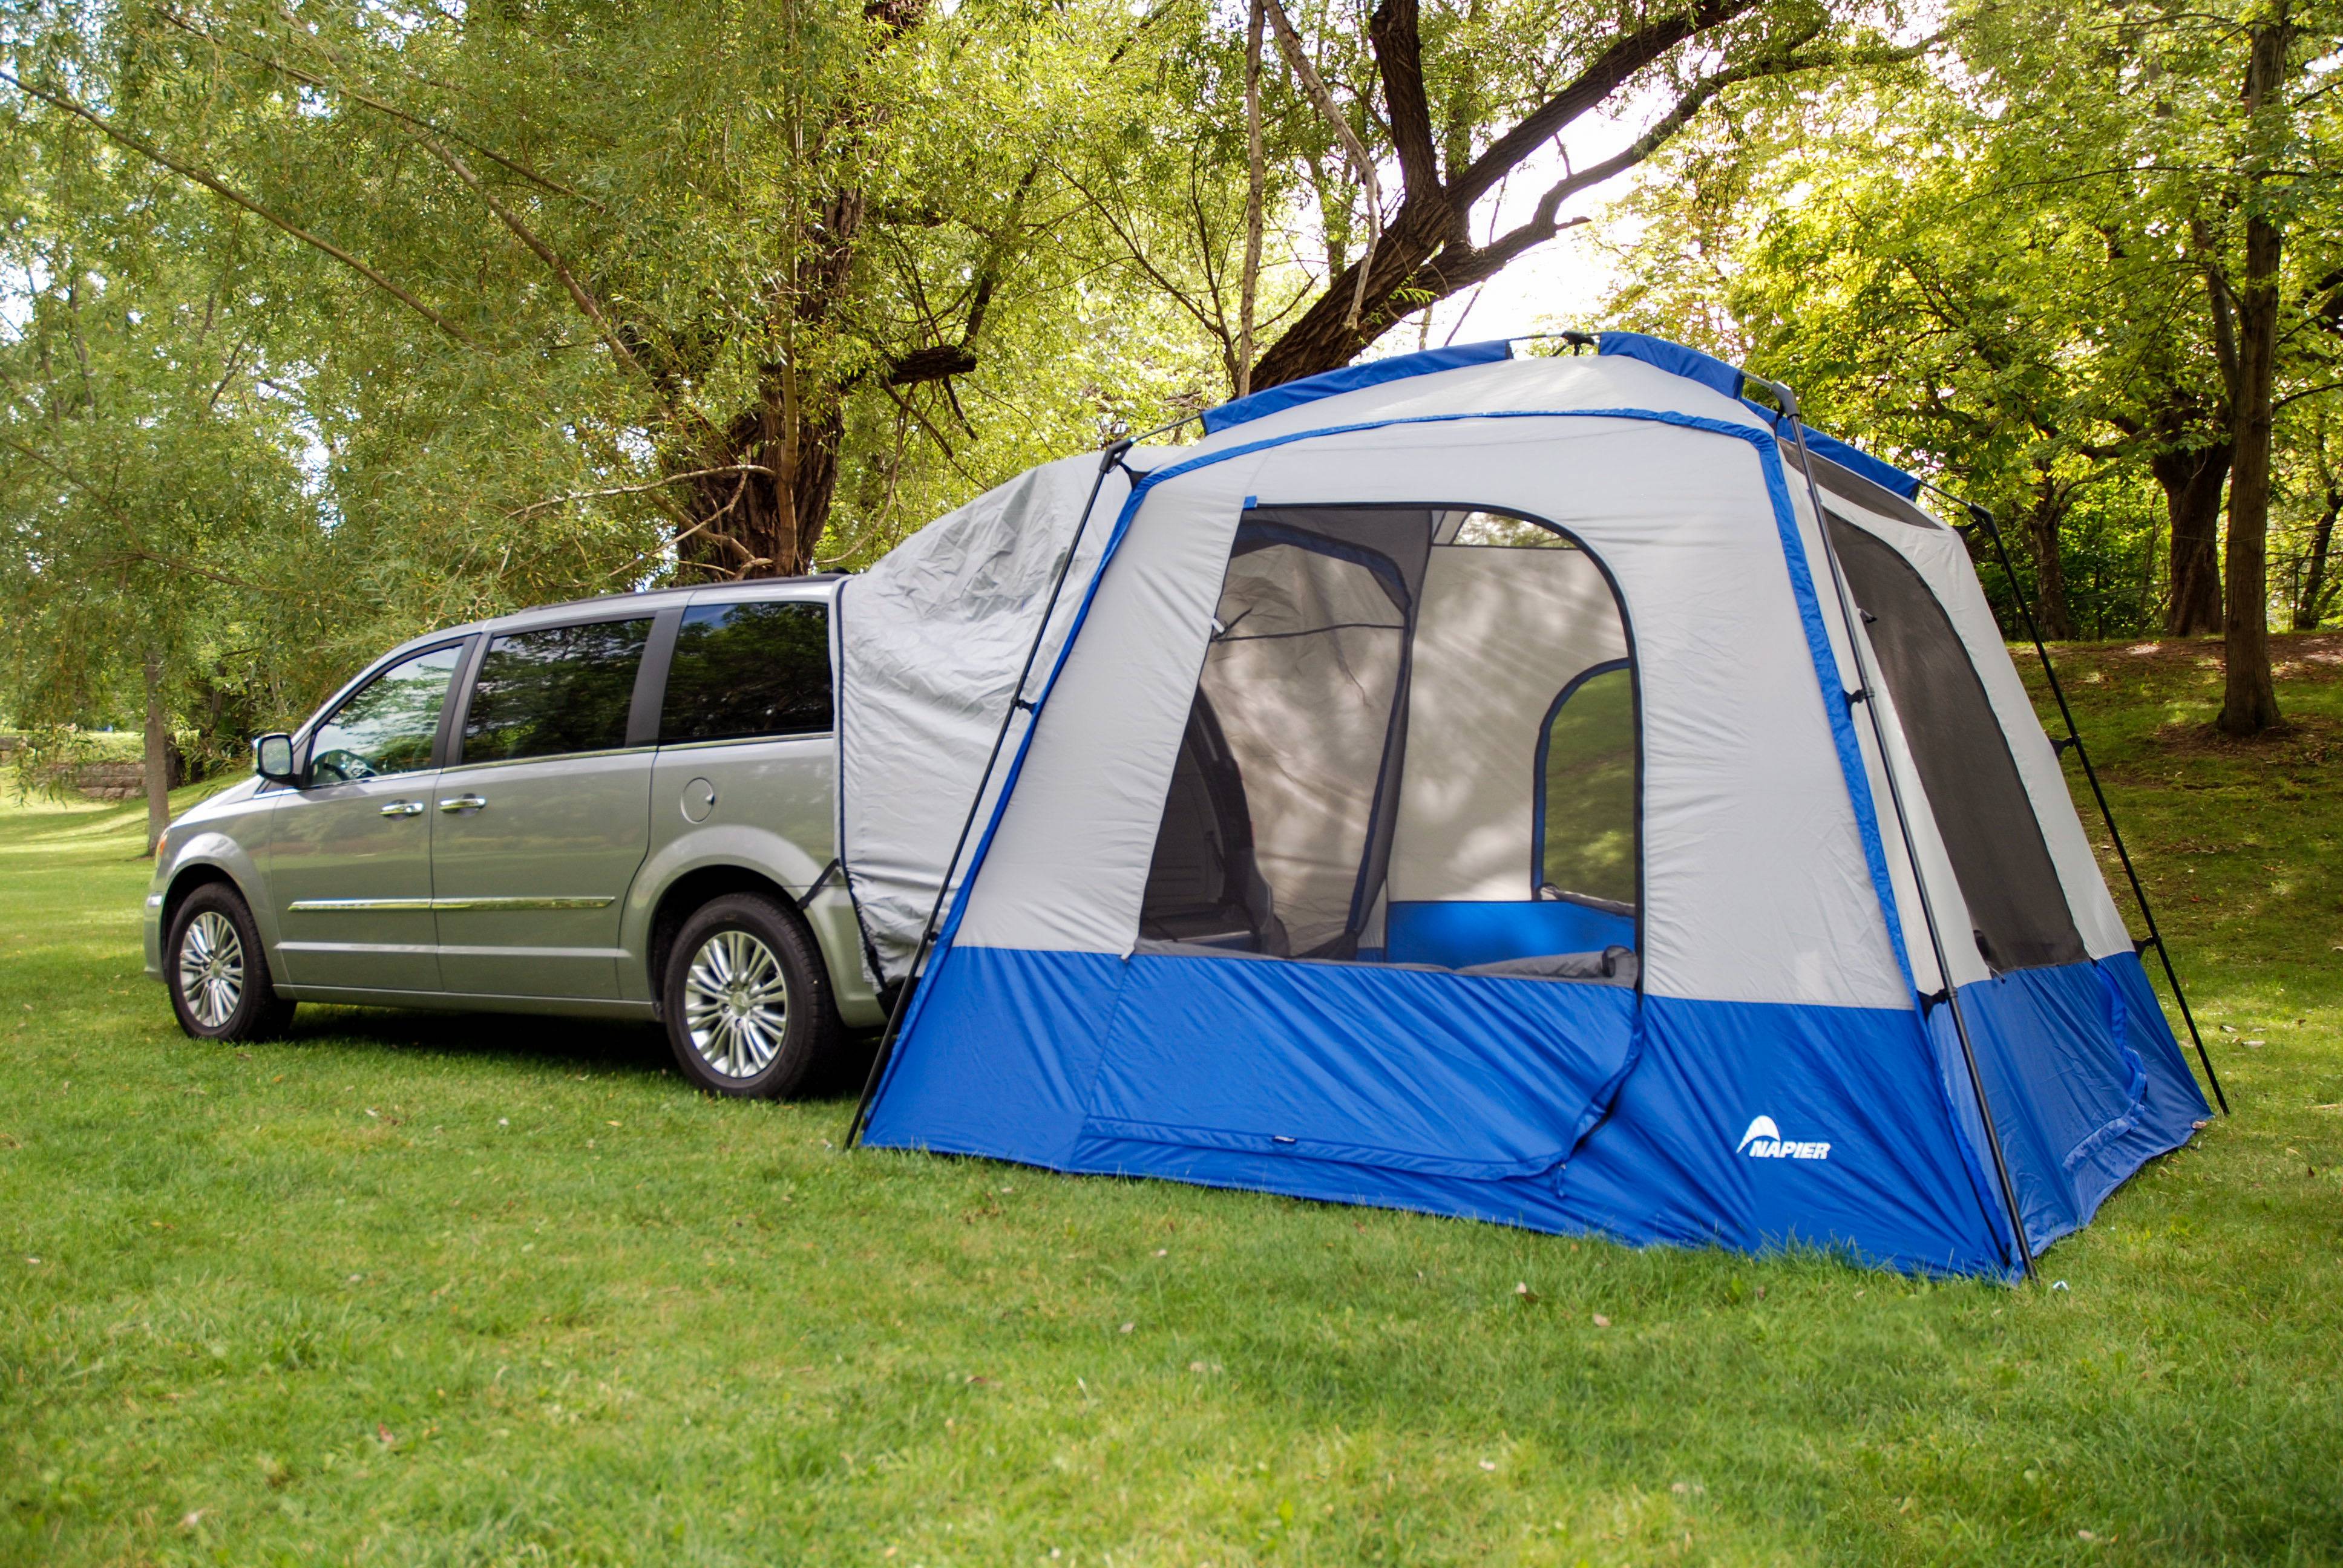 Camping shop. Napier® - Sportz SUV Tent. Тент-палатка Nissan 999t7br300cc. Rightline Gear 110907suv Tent. Приставная палатка к автомобилю.